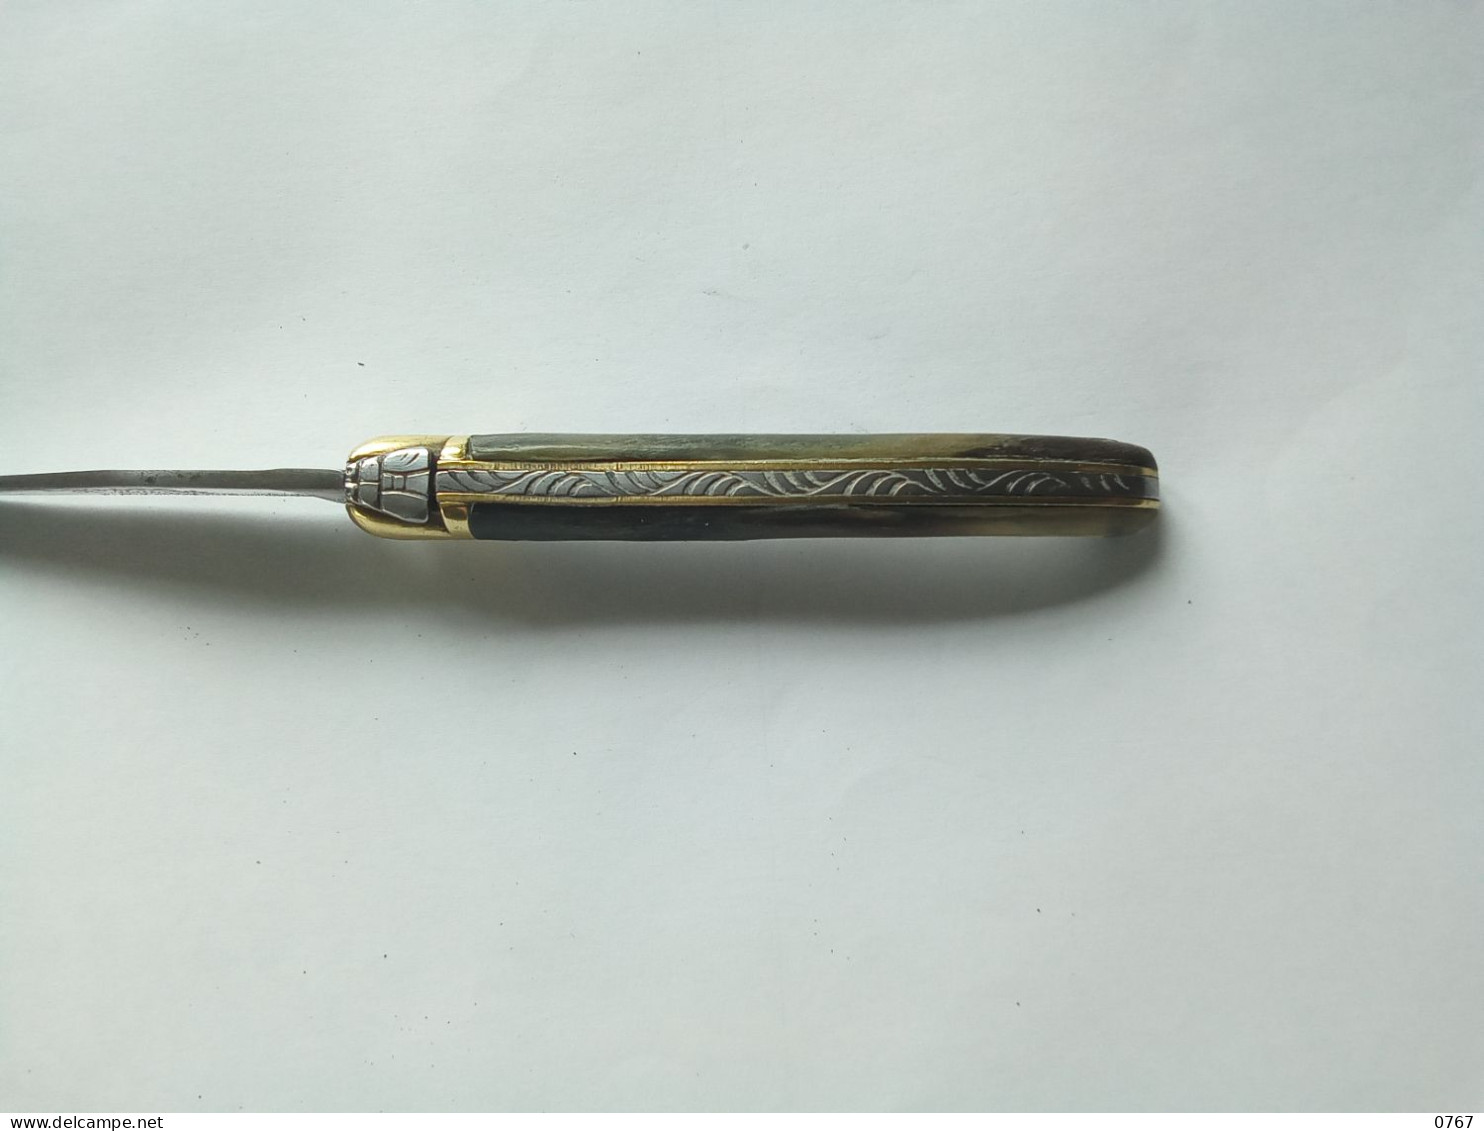 Ancien couteau pliant laguiole signé R. David manche en corne métal décoré vintage ( bazarcollect28 )